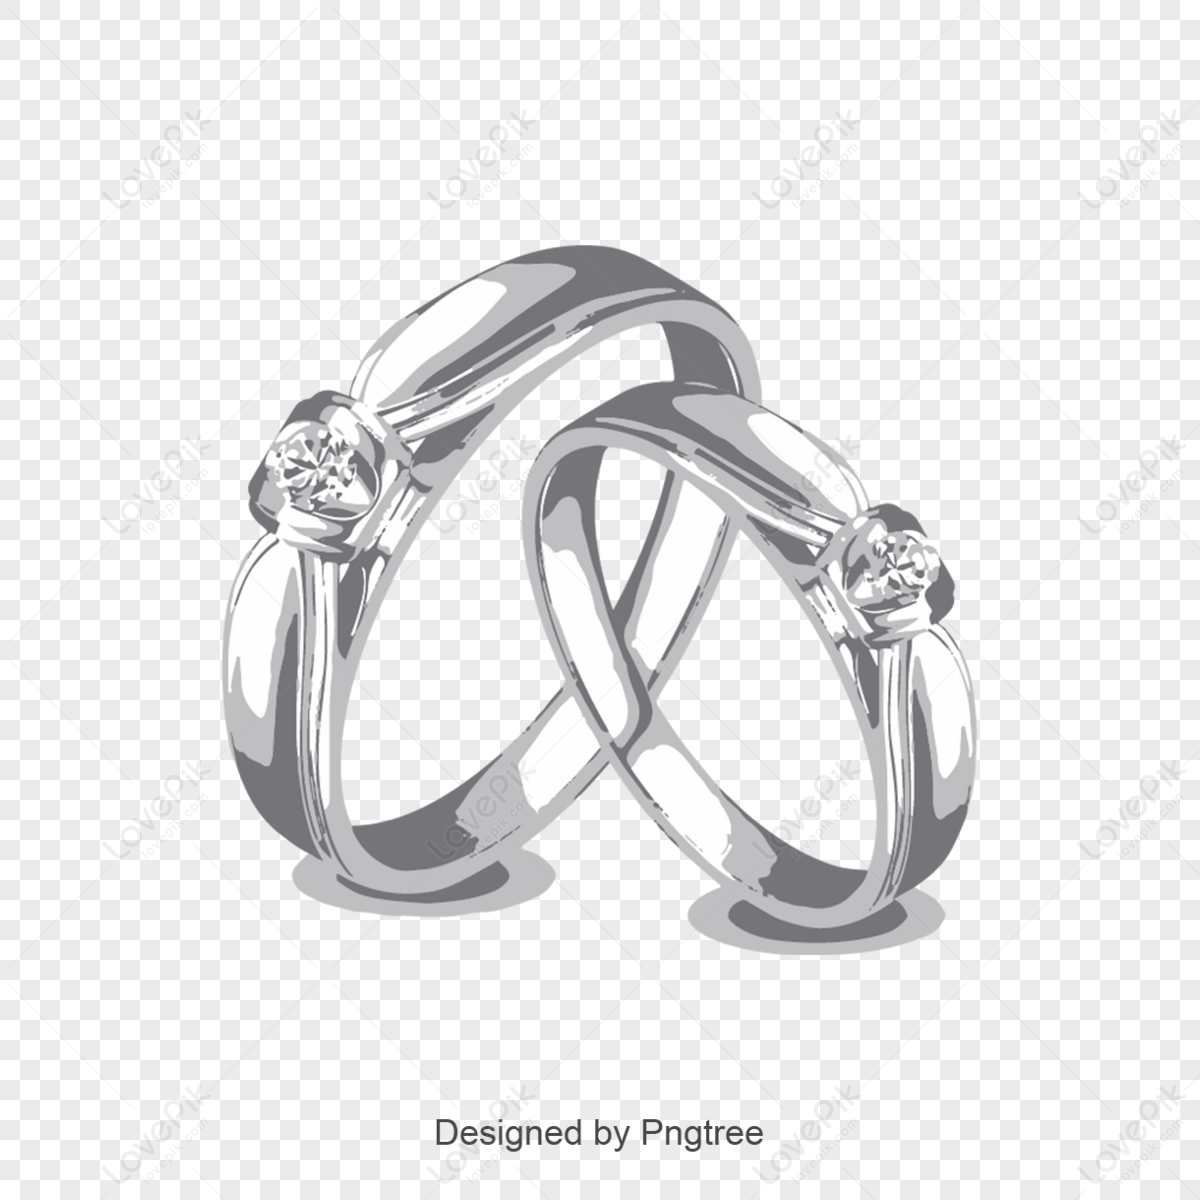 Free wedding ring images, Download Free wedding ring images png images,  Free ClipArts on Clipart Library